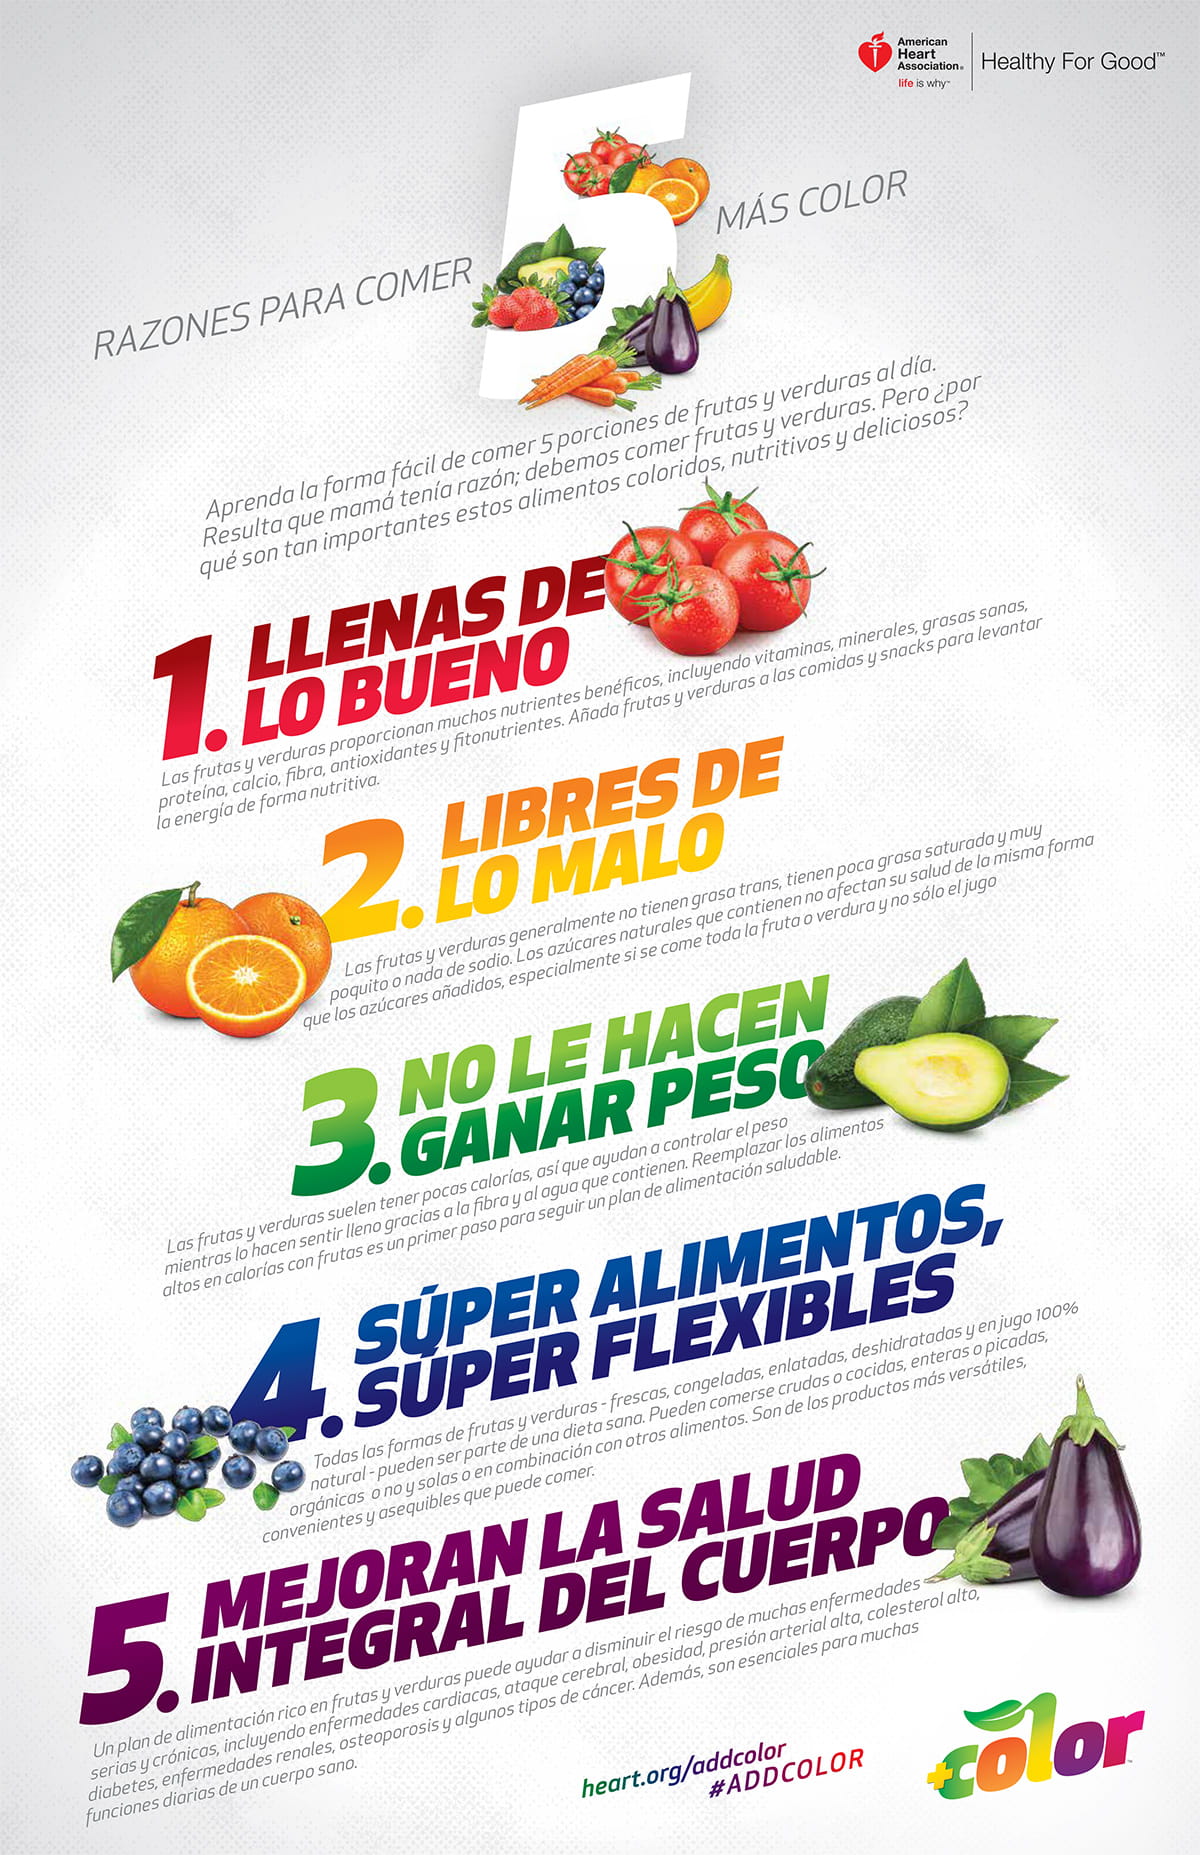 在西班牙语中添加颜色信息图的5个原因